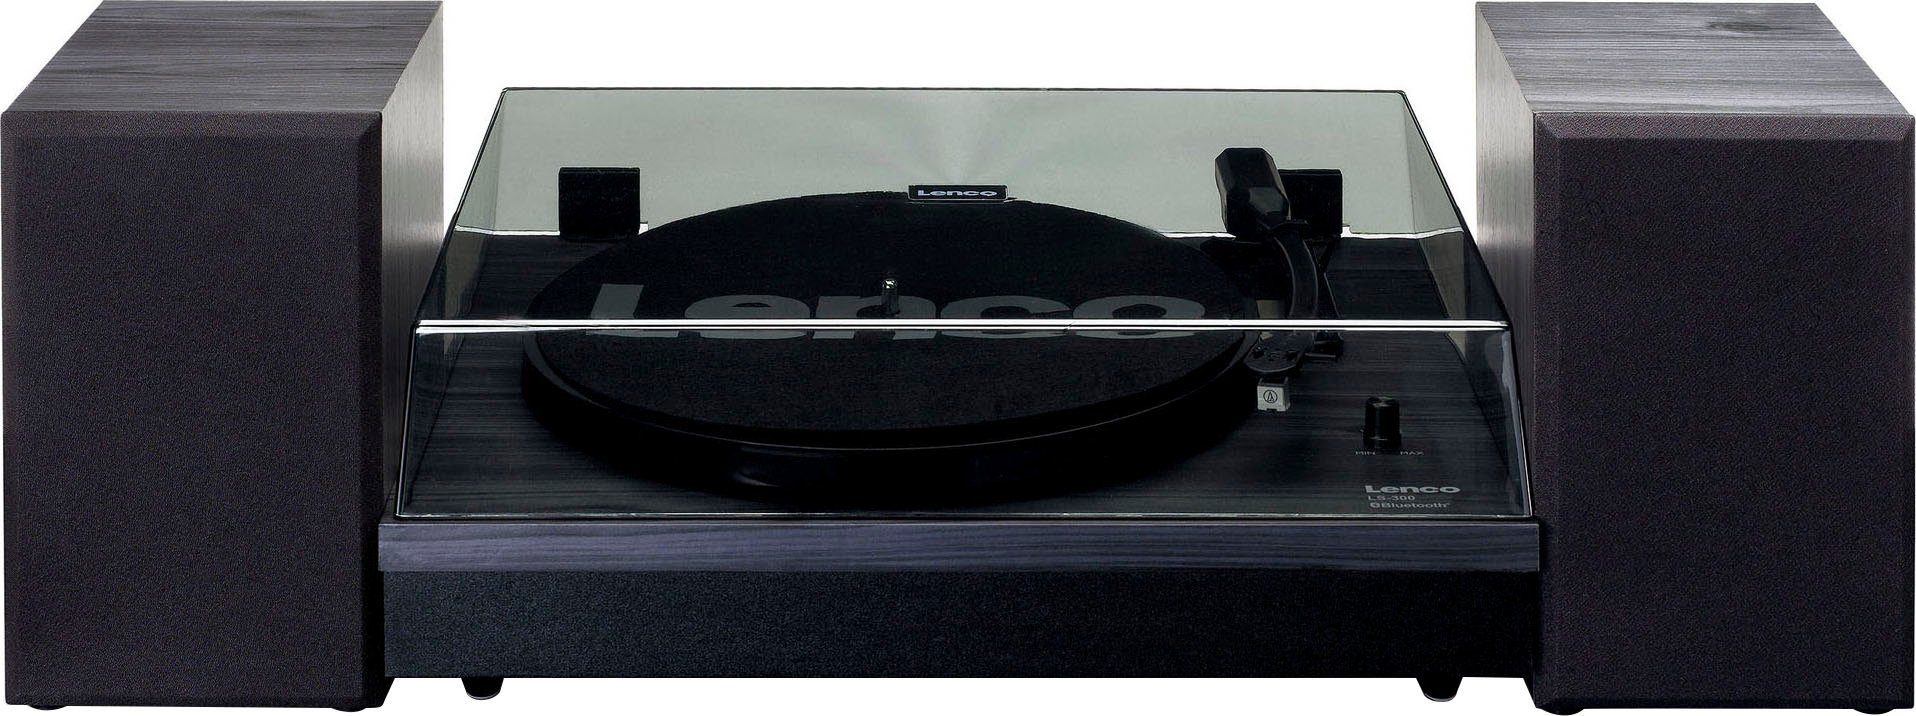 und ( Die Staubschutzkappe den LS-300BK Plattenspieler mit ext. Lenco abnehmbare Riemenantrieb), Lautsprechern schützt Plattenspieler hält sauber Plattenspieler ihn